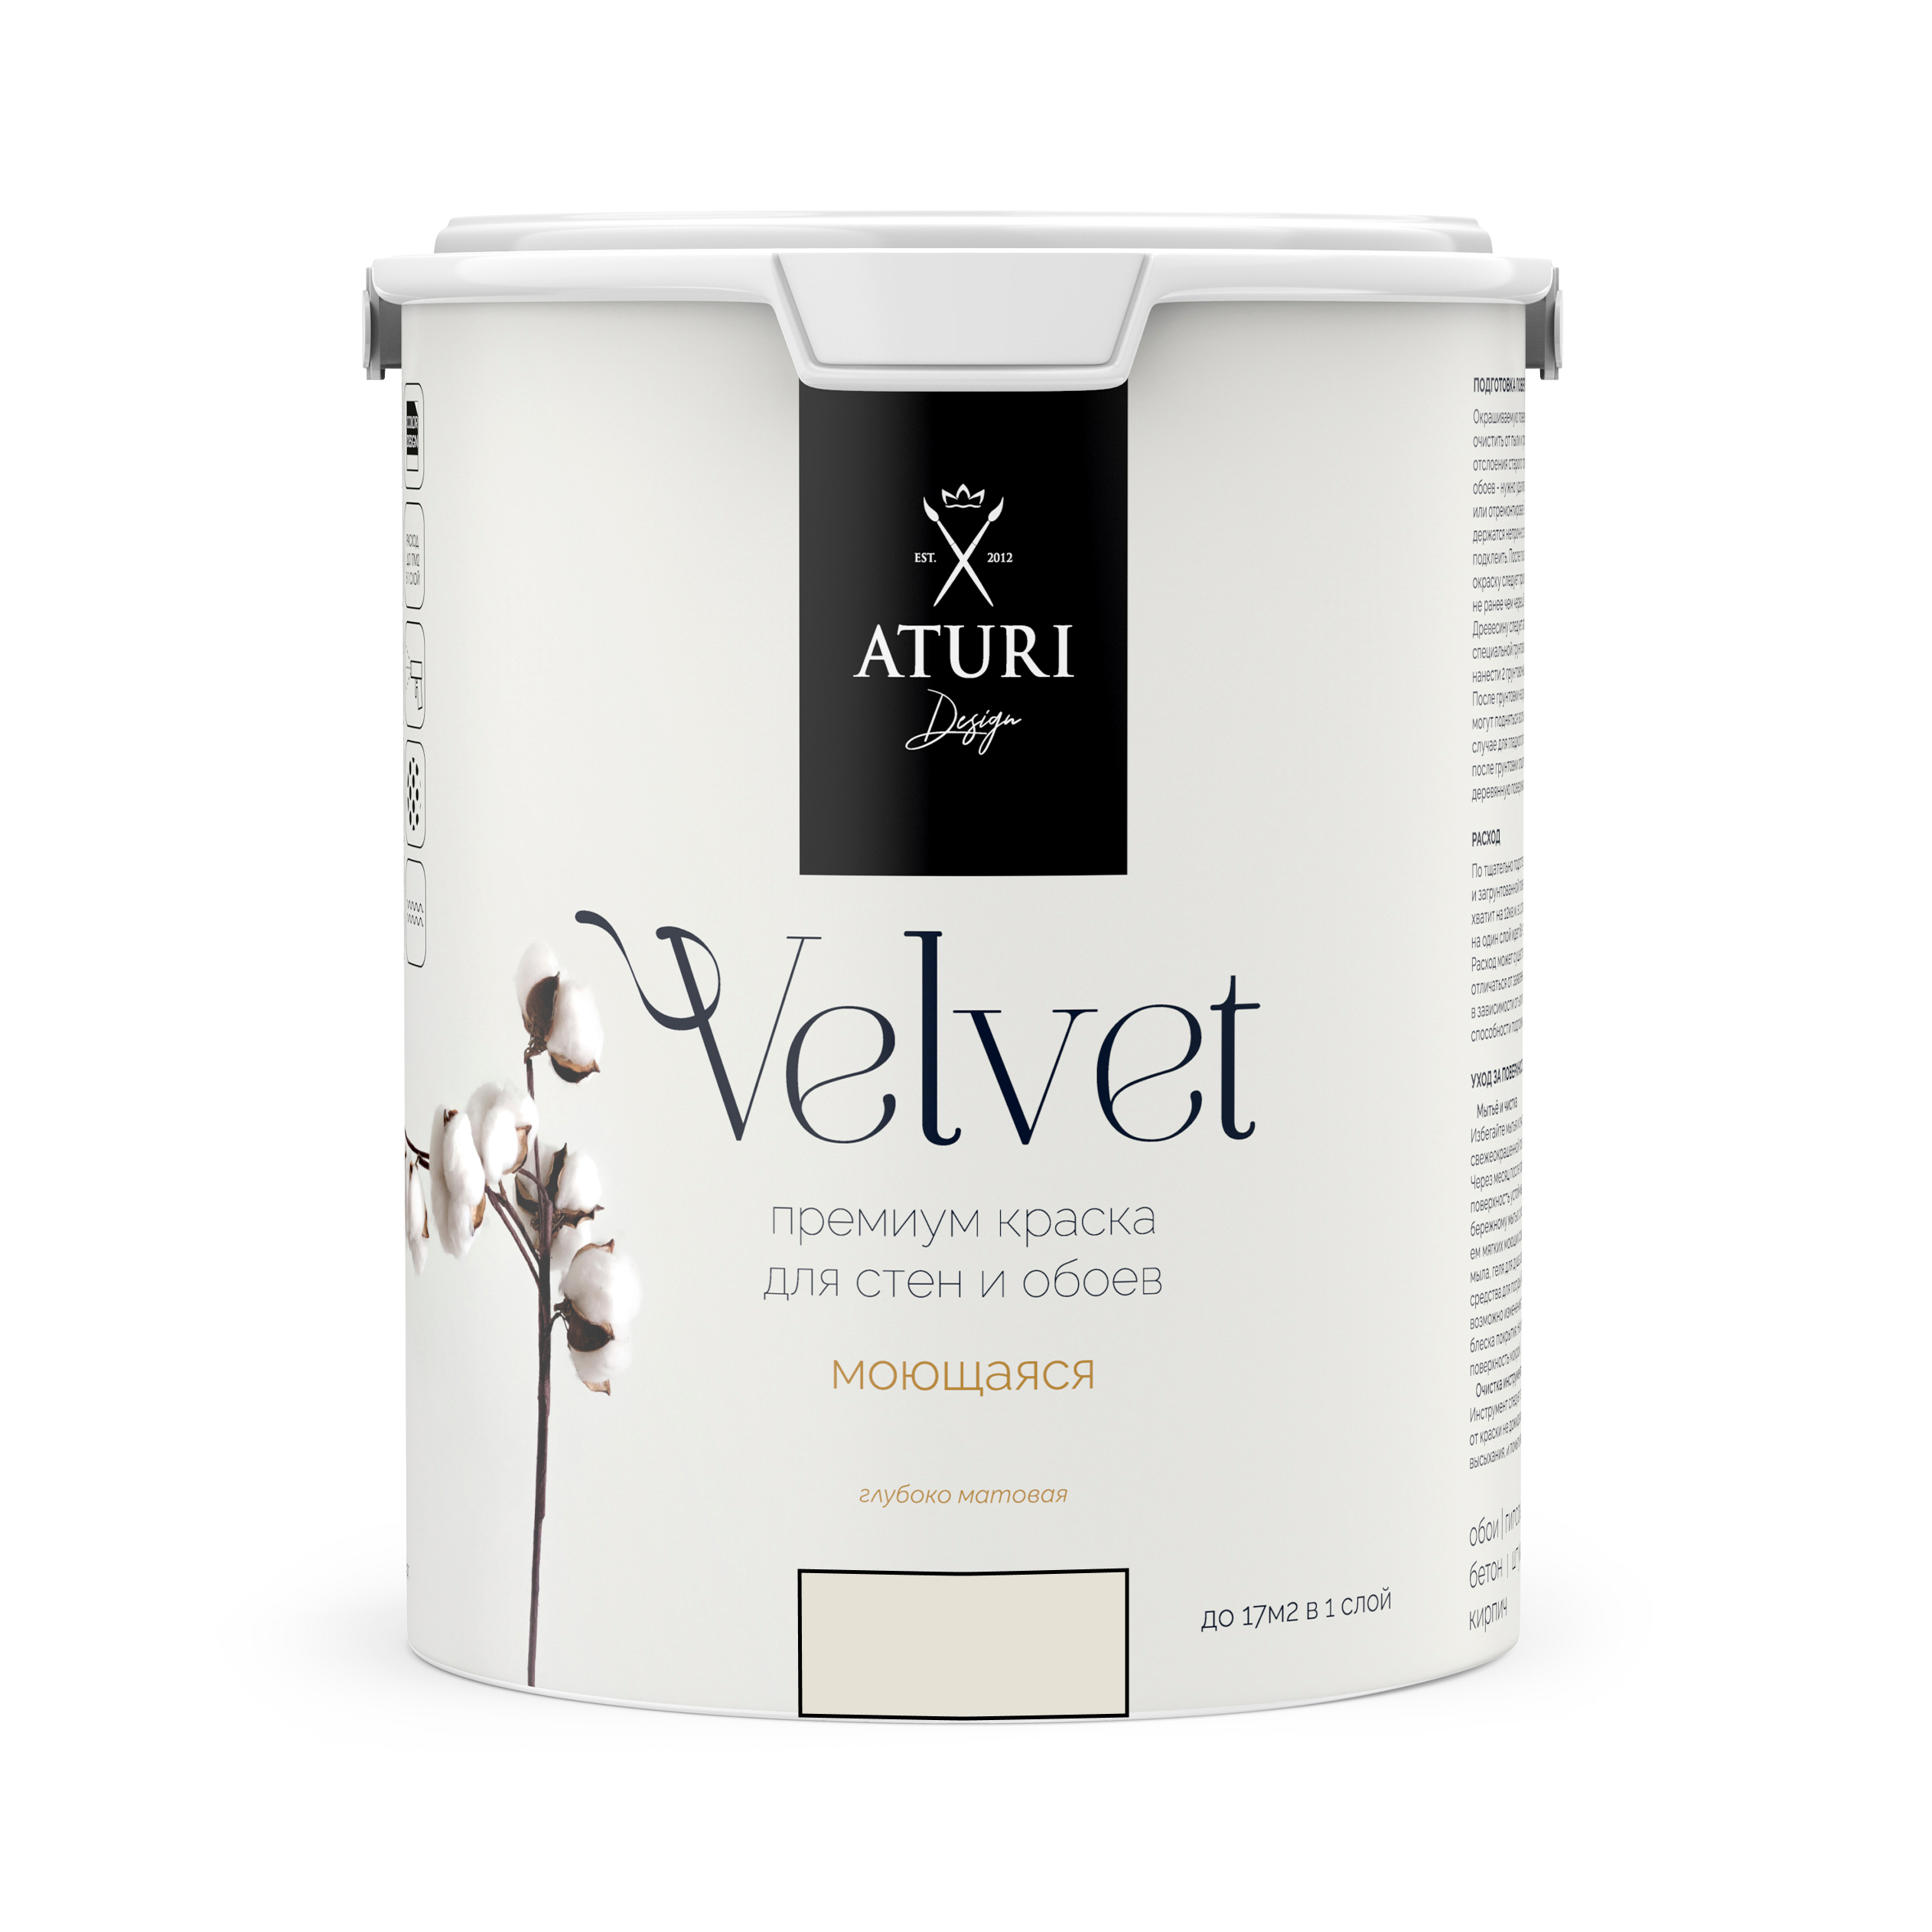 Краска Aturi Design Mia интерьерная, для стен, моющаяся, Ванильный мусс, 3,8 кг краска акриловая aturi глянцевая персиковый мусс 60 г